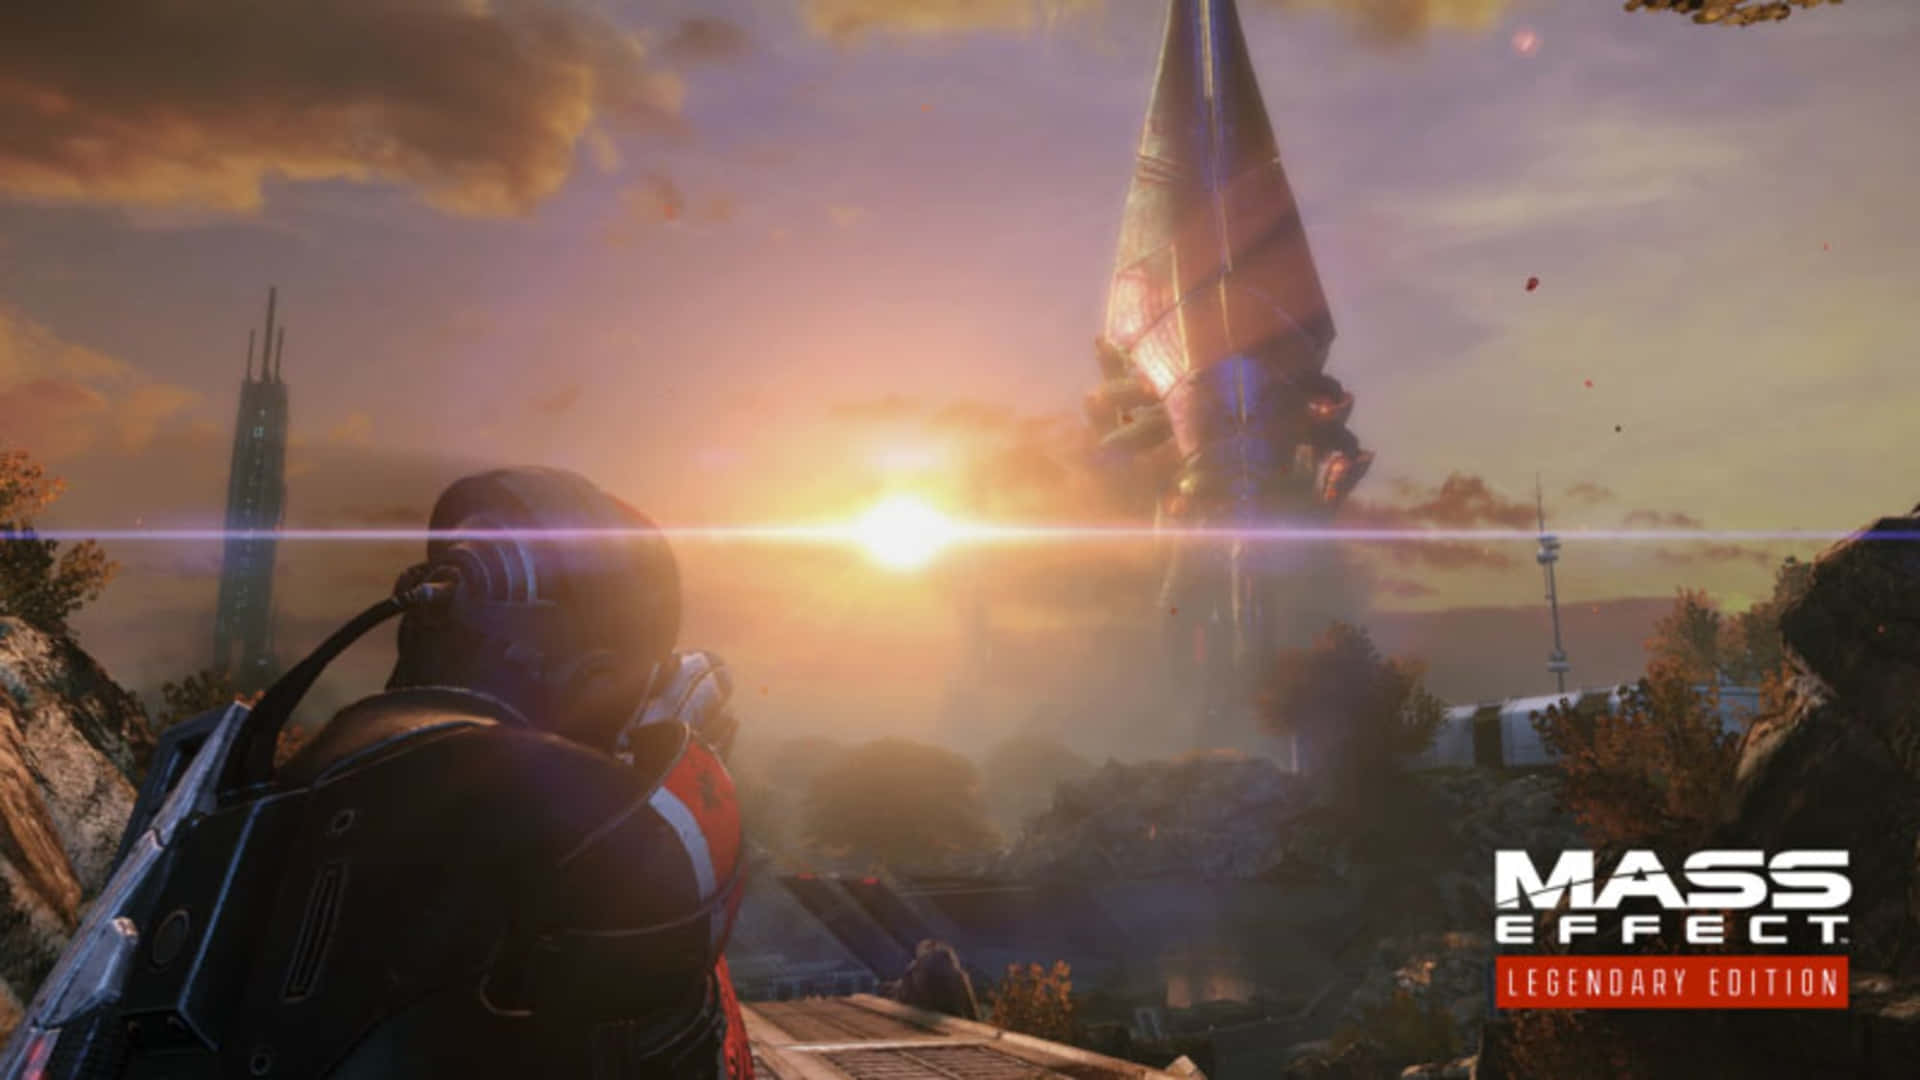 Mass Effect Legendary Edition - Stunning space adventure Wallpaper